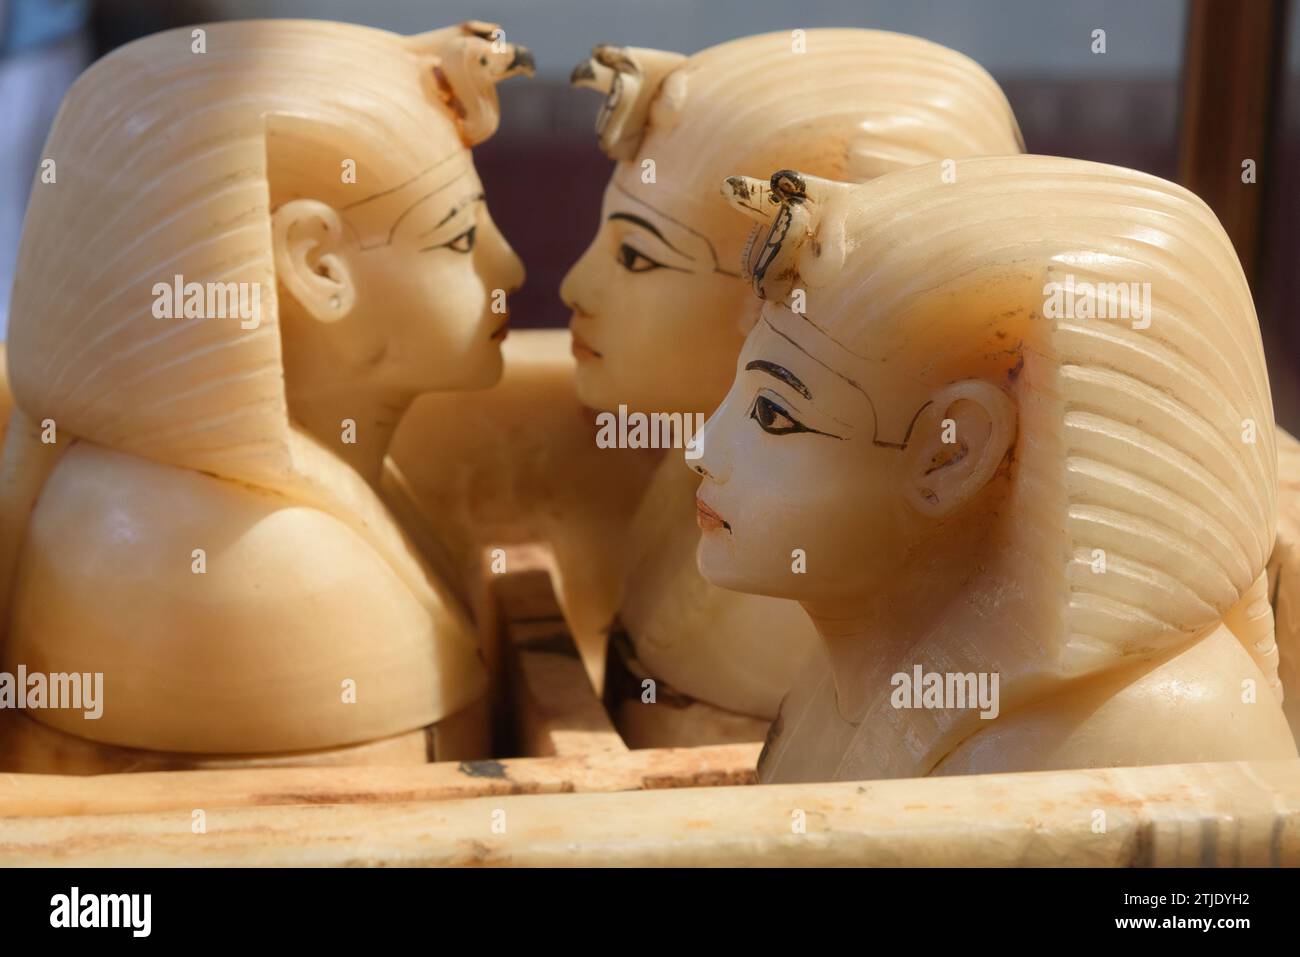 Cassa canopica di alabastro di Tutankhamon. Museo Egizio, il Cairo. Contro la parete orientale del tesoro c'era un alto santuario dorato contenente il torace canopico, in cui gli organi interni di Tutankhamon furono collocati dopo la mummificazione. I vasi canopici proteggevano gli organi interni di Tutankhamon. I vasi sono stati fatti per contenere gli organi che sono stati rimossi dal corpo nel processo di mummificazione: Polmoni, fegato, intestini e stomaco. Ogni organo era protetto da uno dei quattro figli di Horus: Hapy (polmoni), Imsety (fegato), Duamutef (stomaco) e Qebehsenuef (intestini). Foto Stock